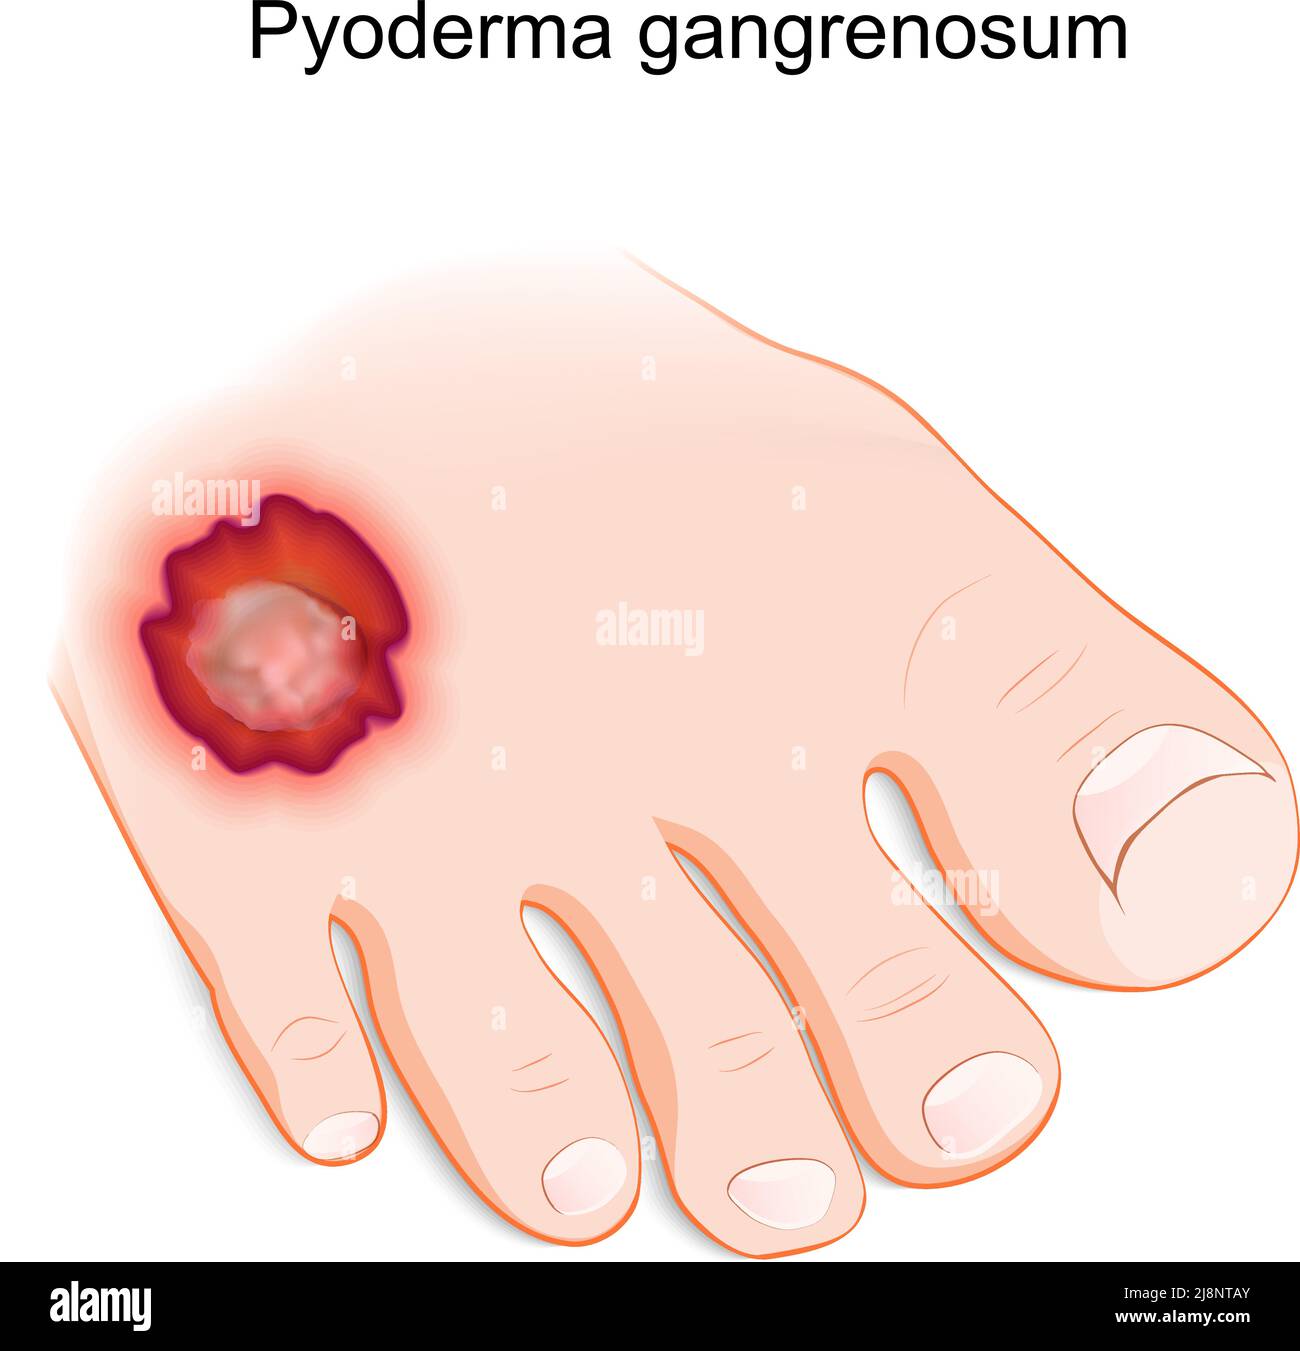 Pyoderma gangrenosum. Entzündliche Hauterkrankung. Menschlichen Fuß mit einem schmerzhaften Geschwulst. vektor-Illustration Stock Vektor